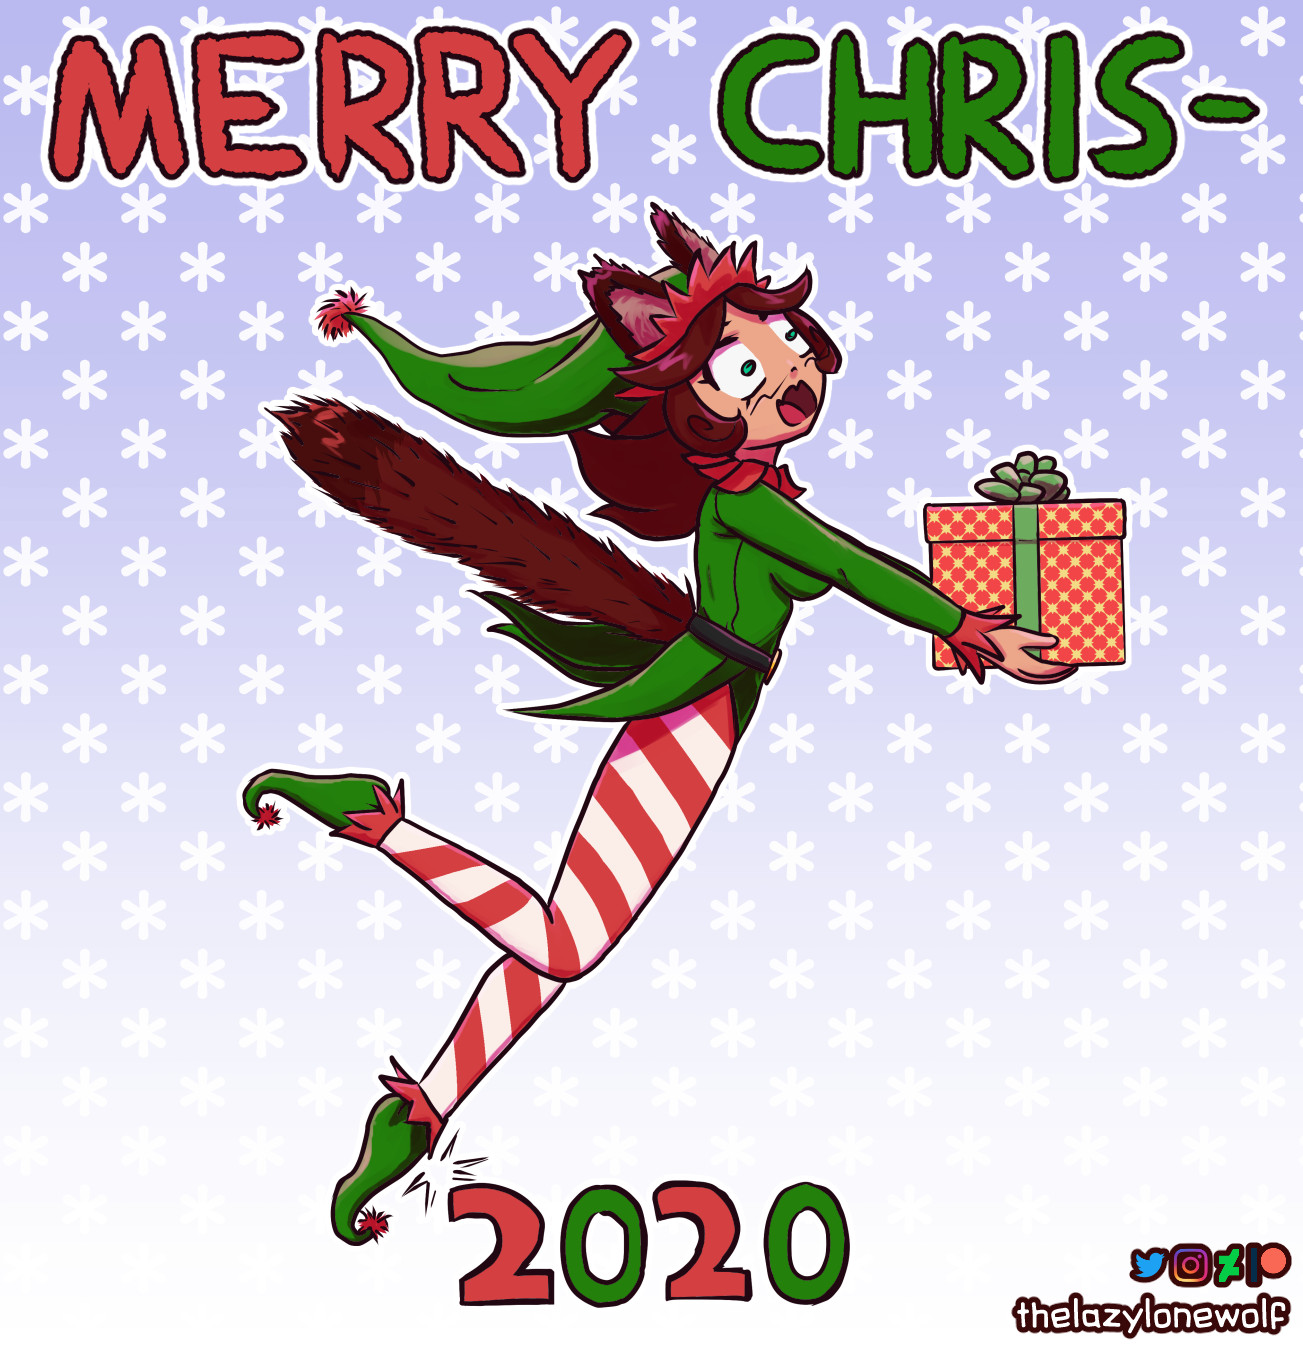 Bonus art for Christmas 2020